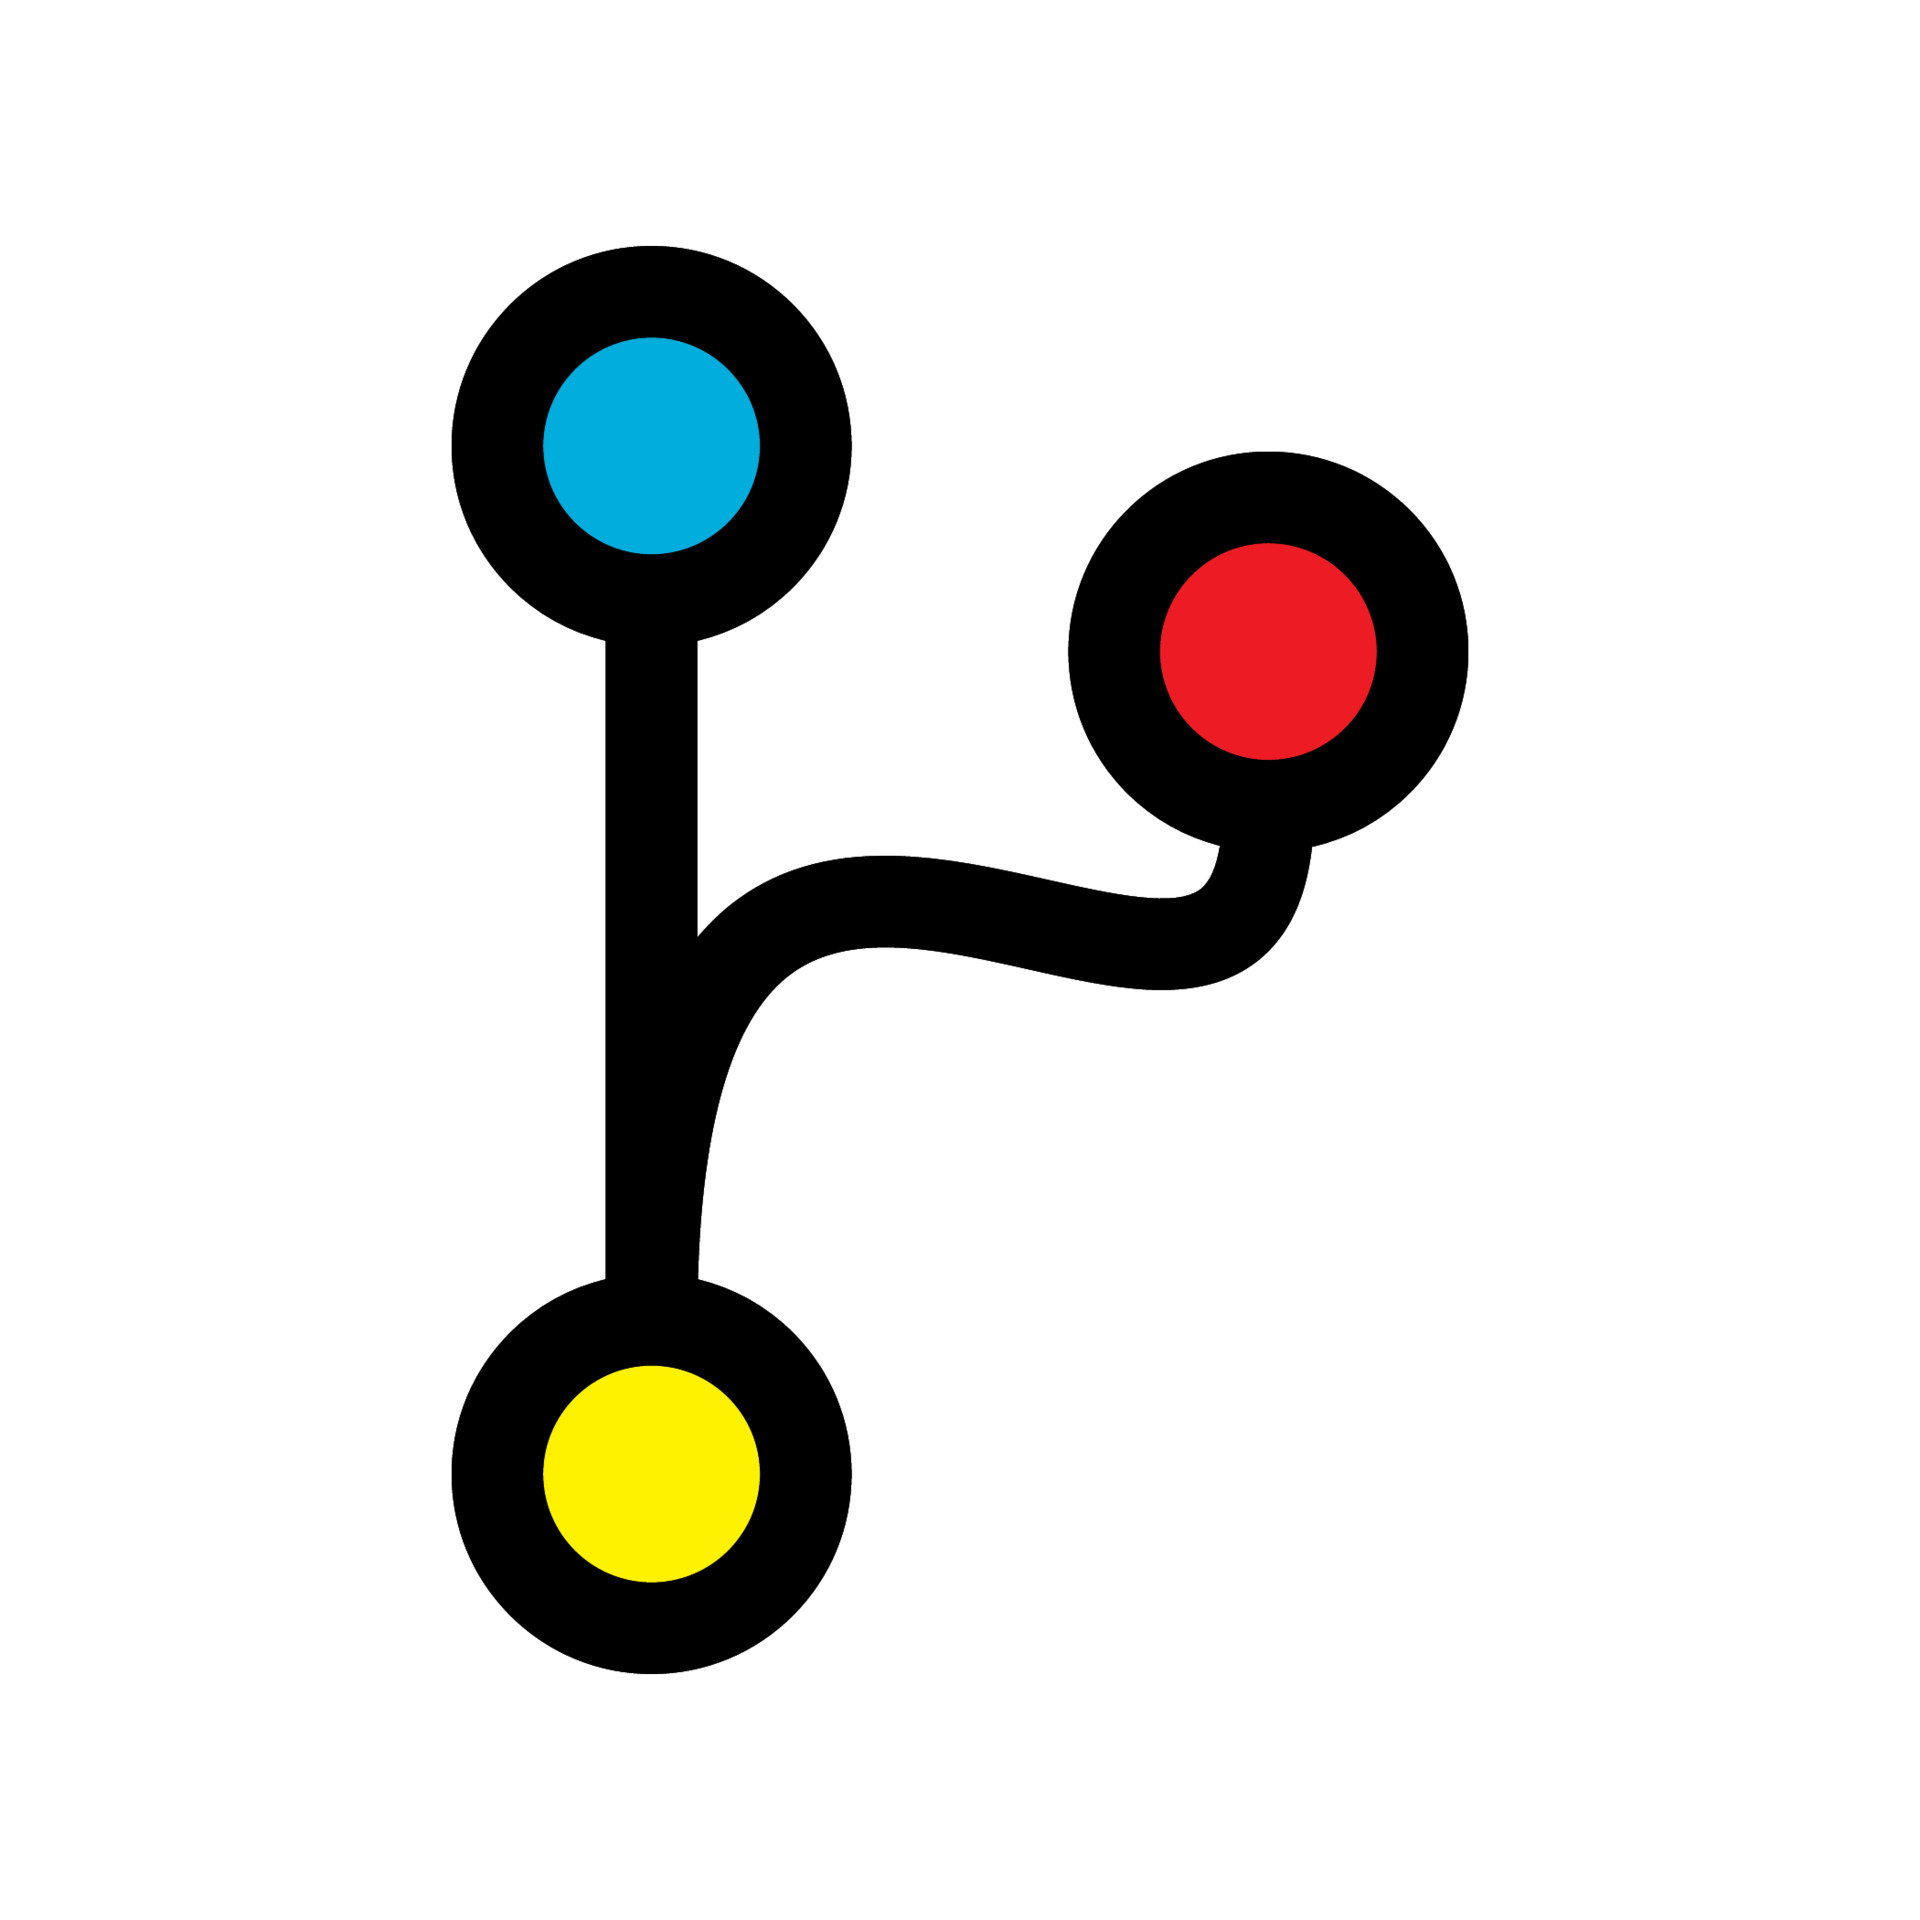 img/git-branch-logo.jpg